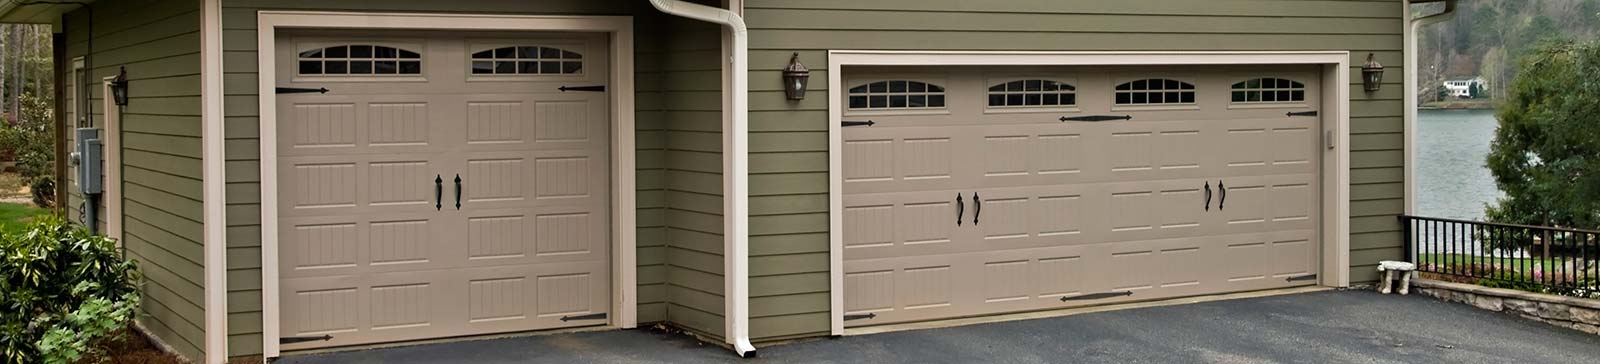 Garage Door Repair Experts | Irvington NJ